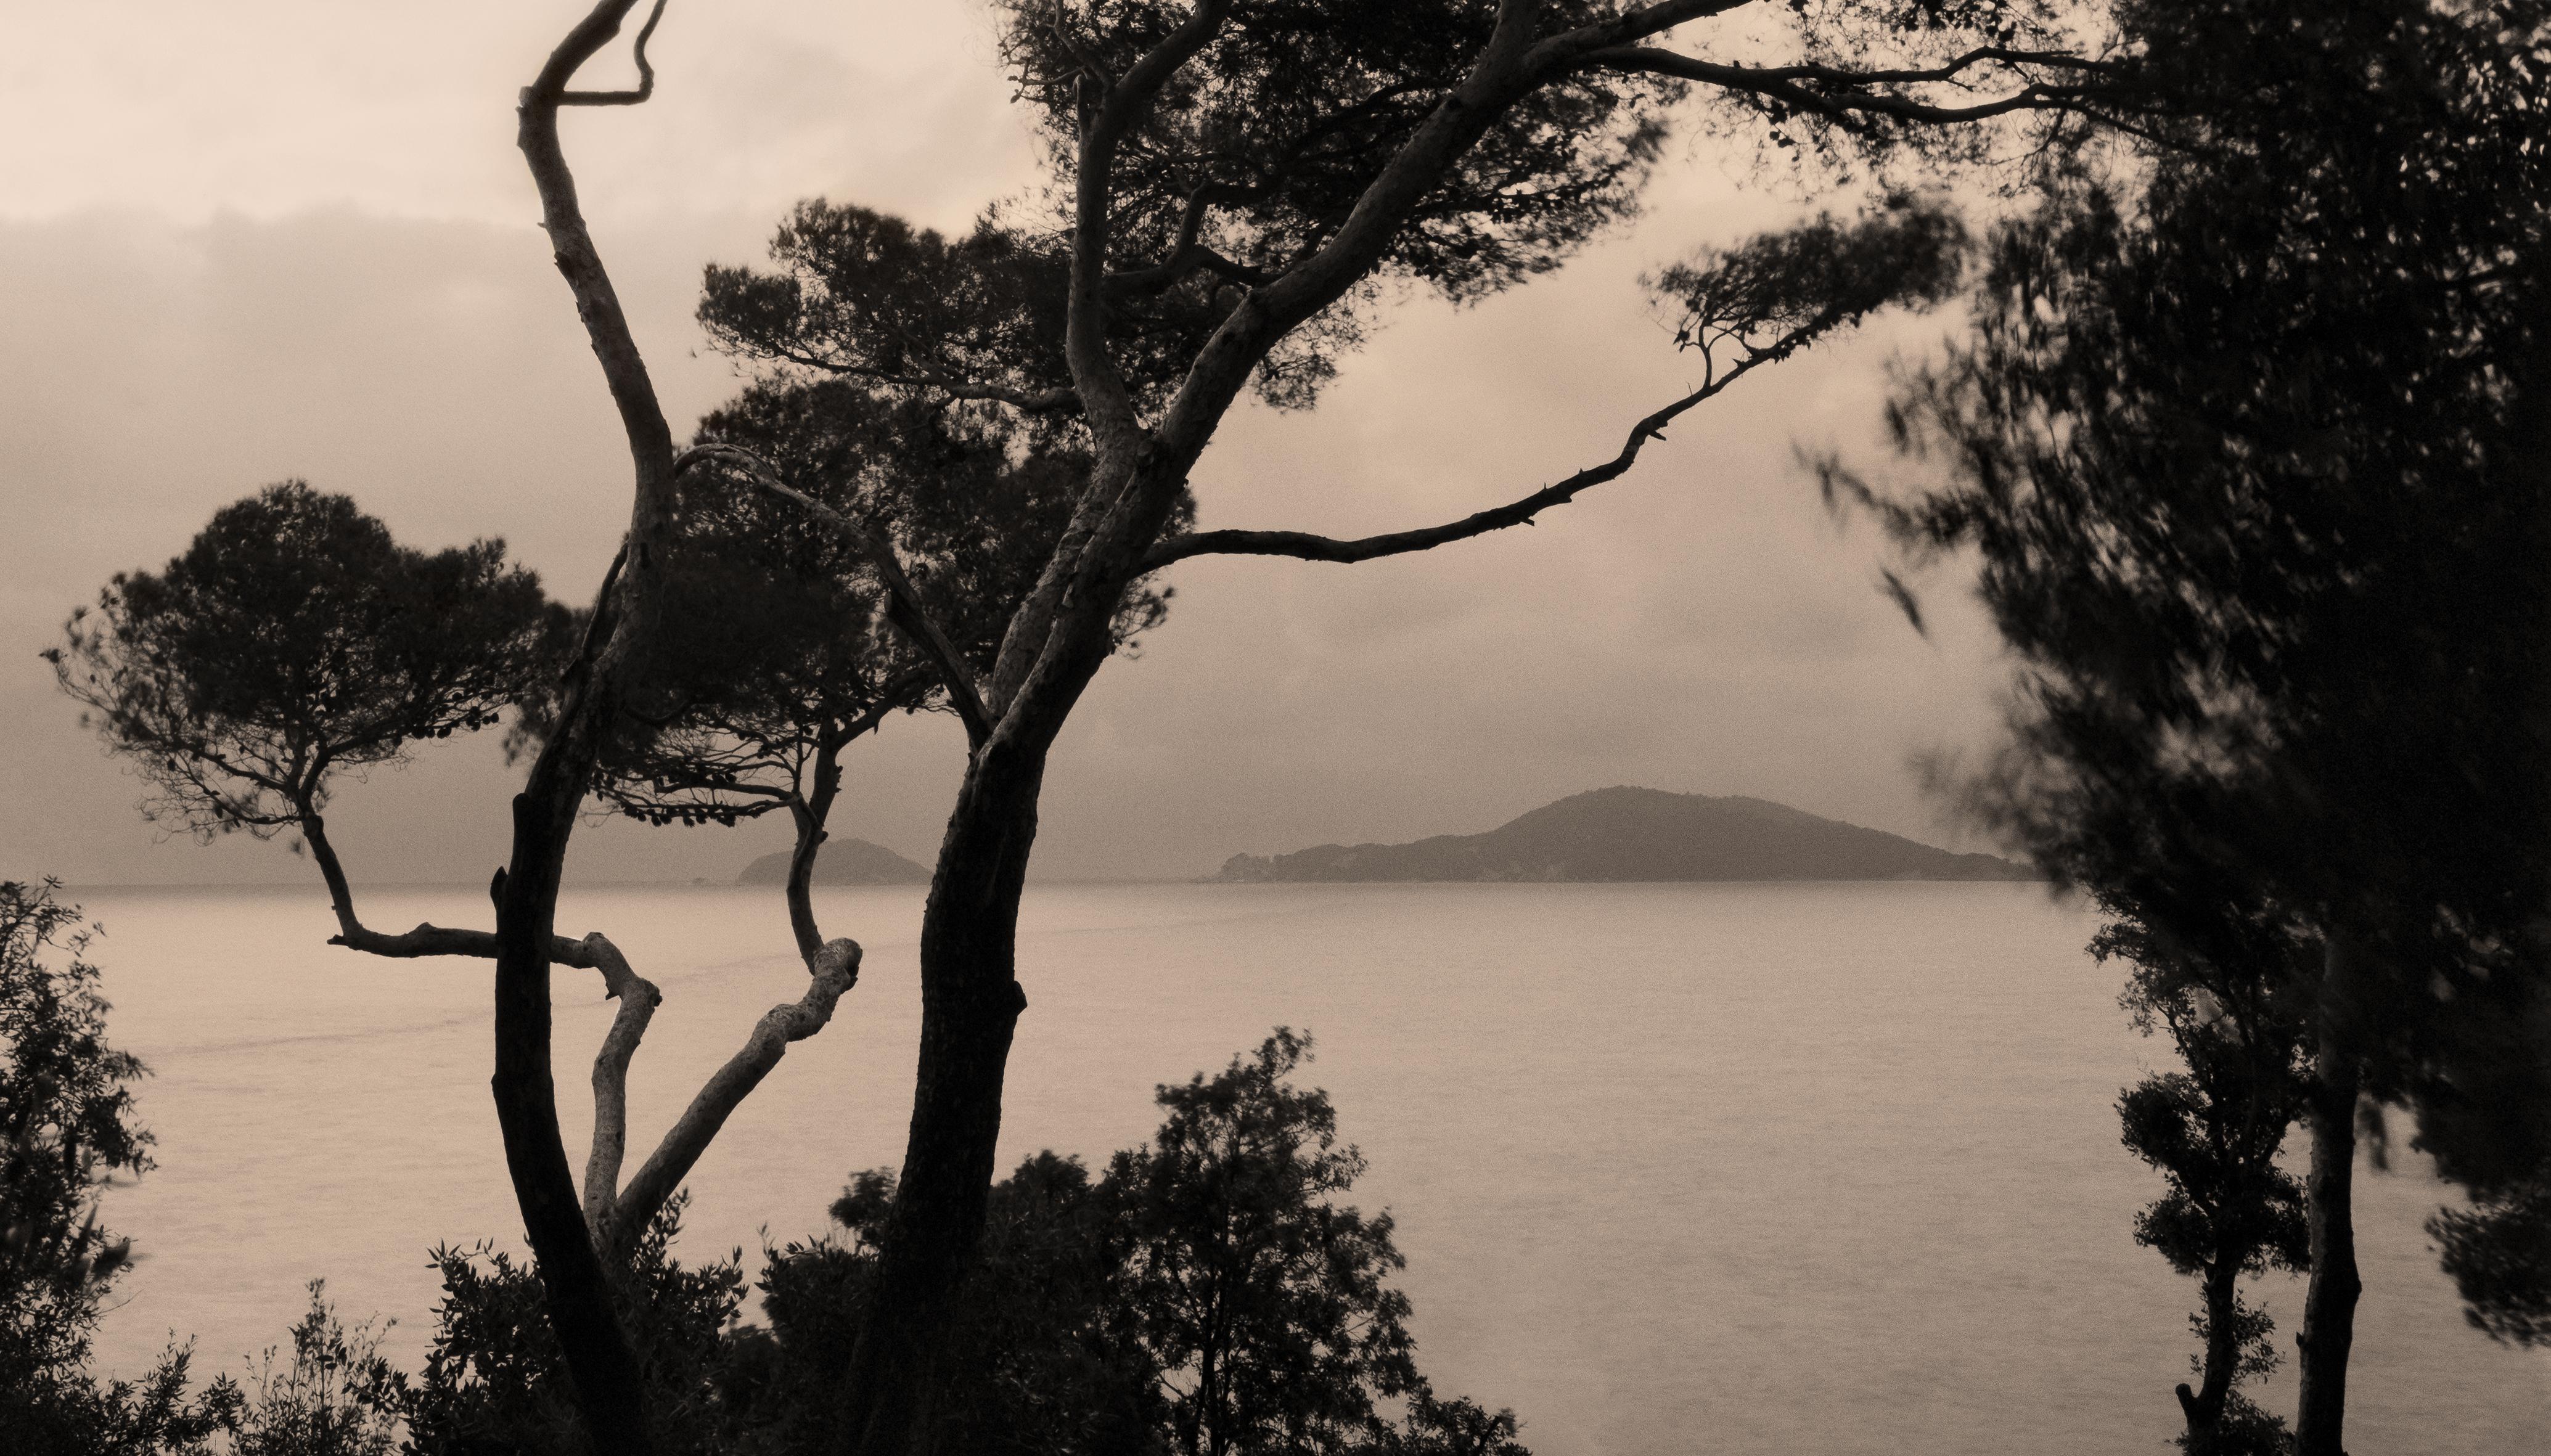 Landscape Photograph Ugne Pouwell - Actuels - Photographie de paysage de la Riviera italienne 175 x 100 cm, édition limitée 5